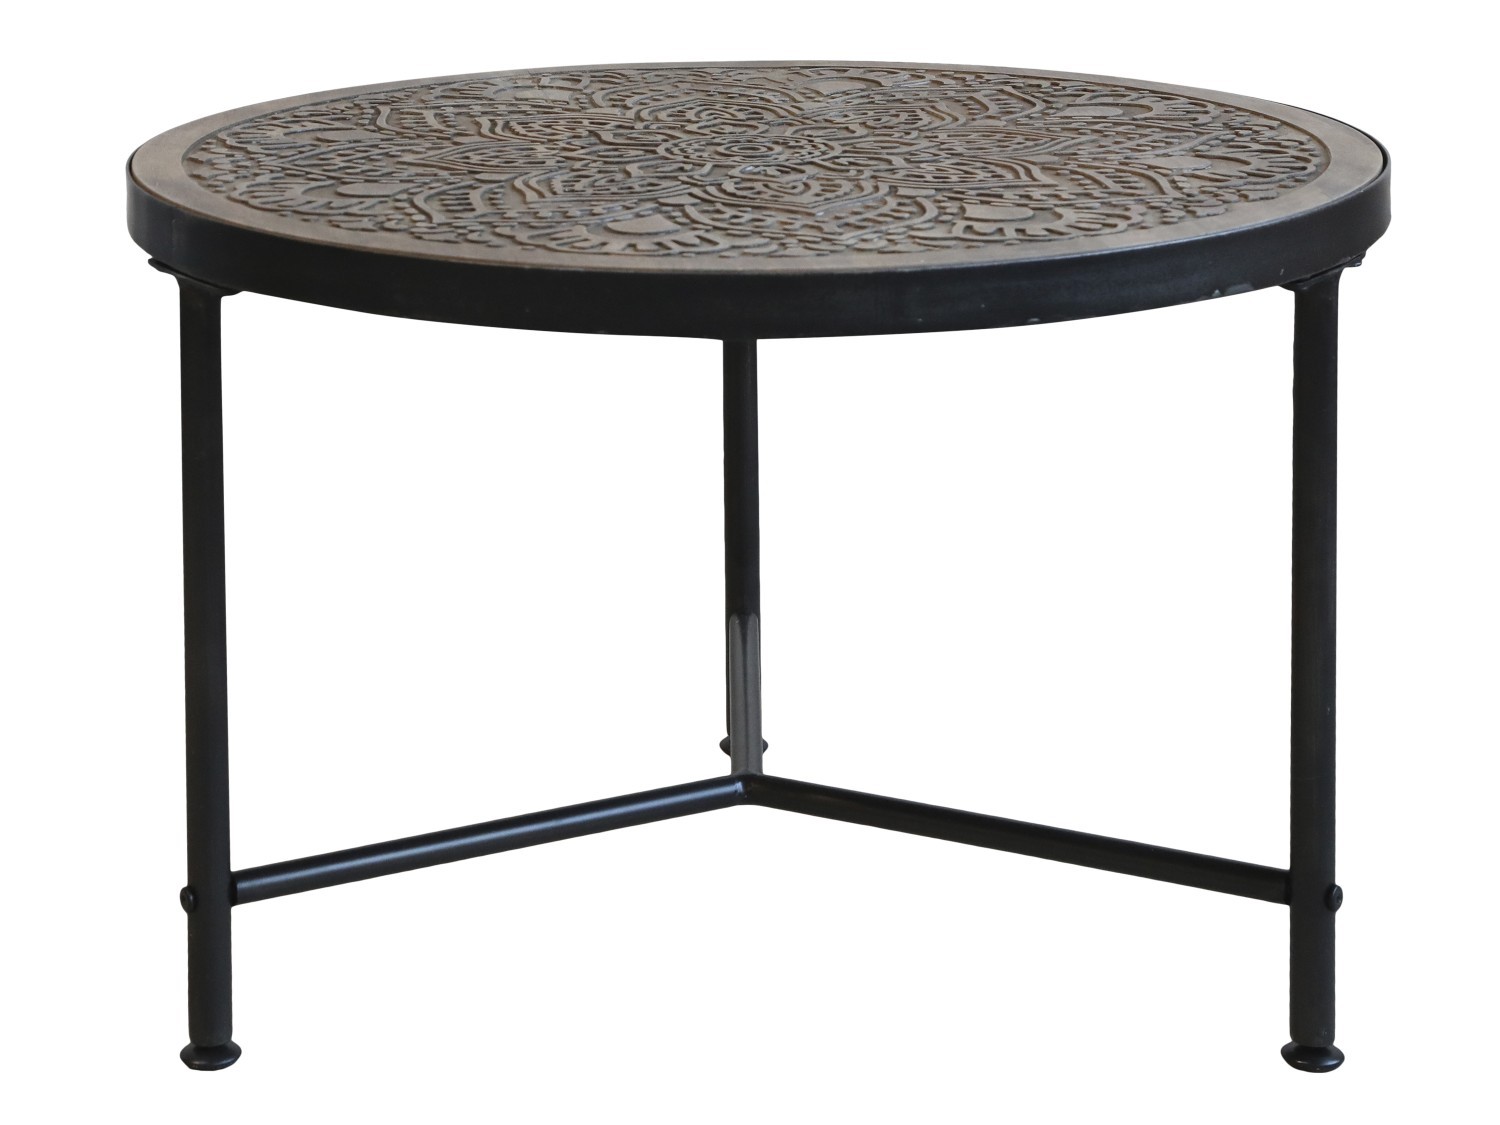 Kovový konferenční stůl s dřevěnou deskou s ornamenty Coffee - Ø 60*41cm Chic Antique